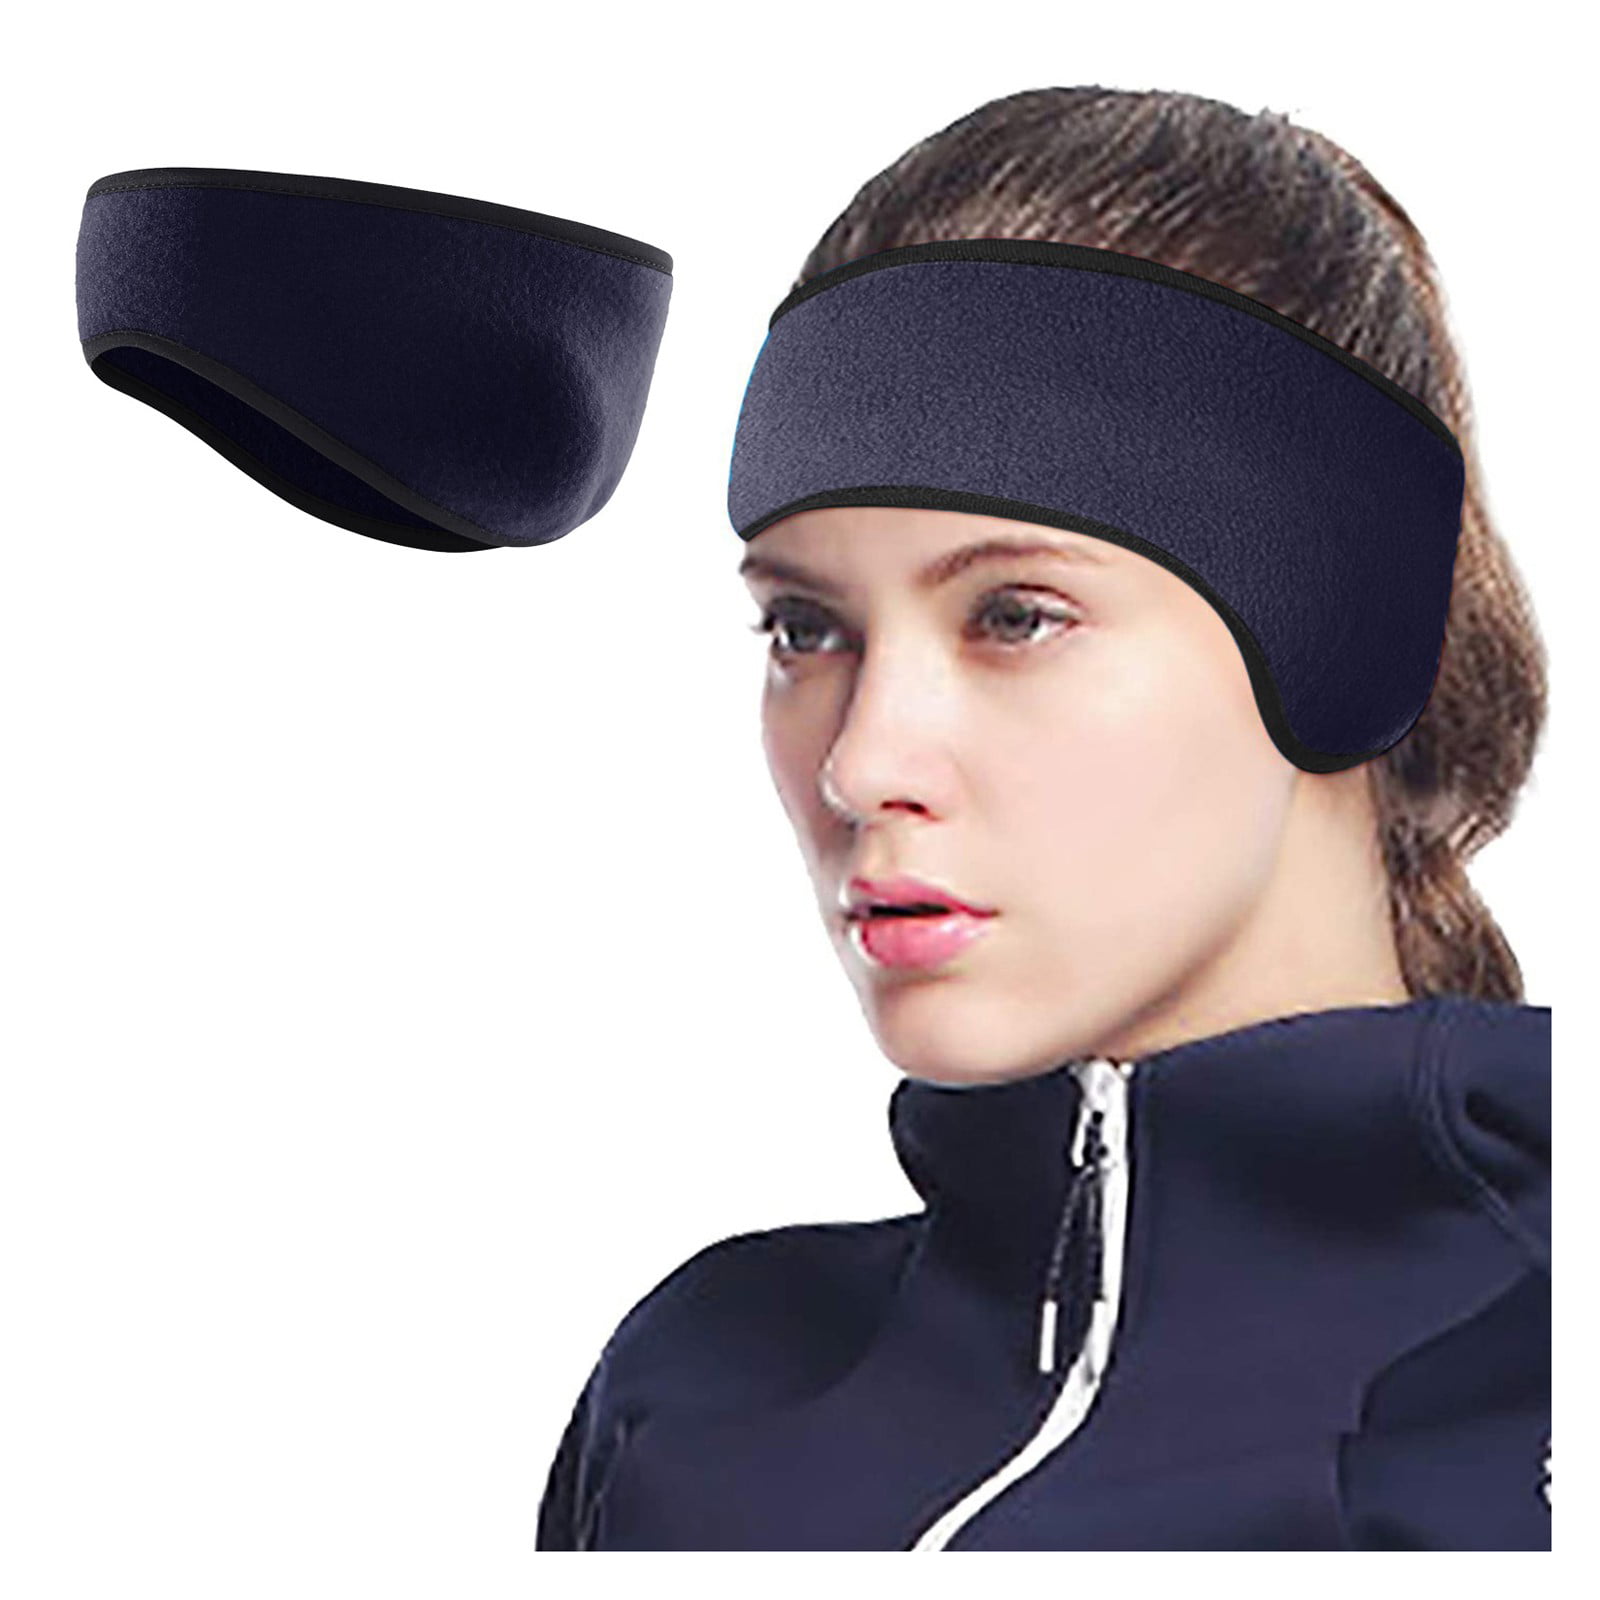 Tianayer Ear Warmers Cover Headband Winter Sports Headwrap Ear muffs for Men Women